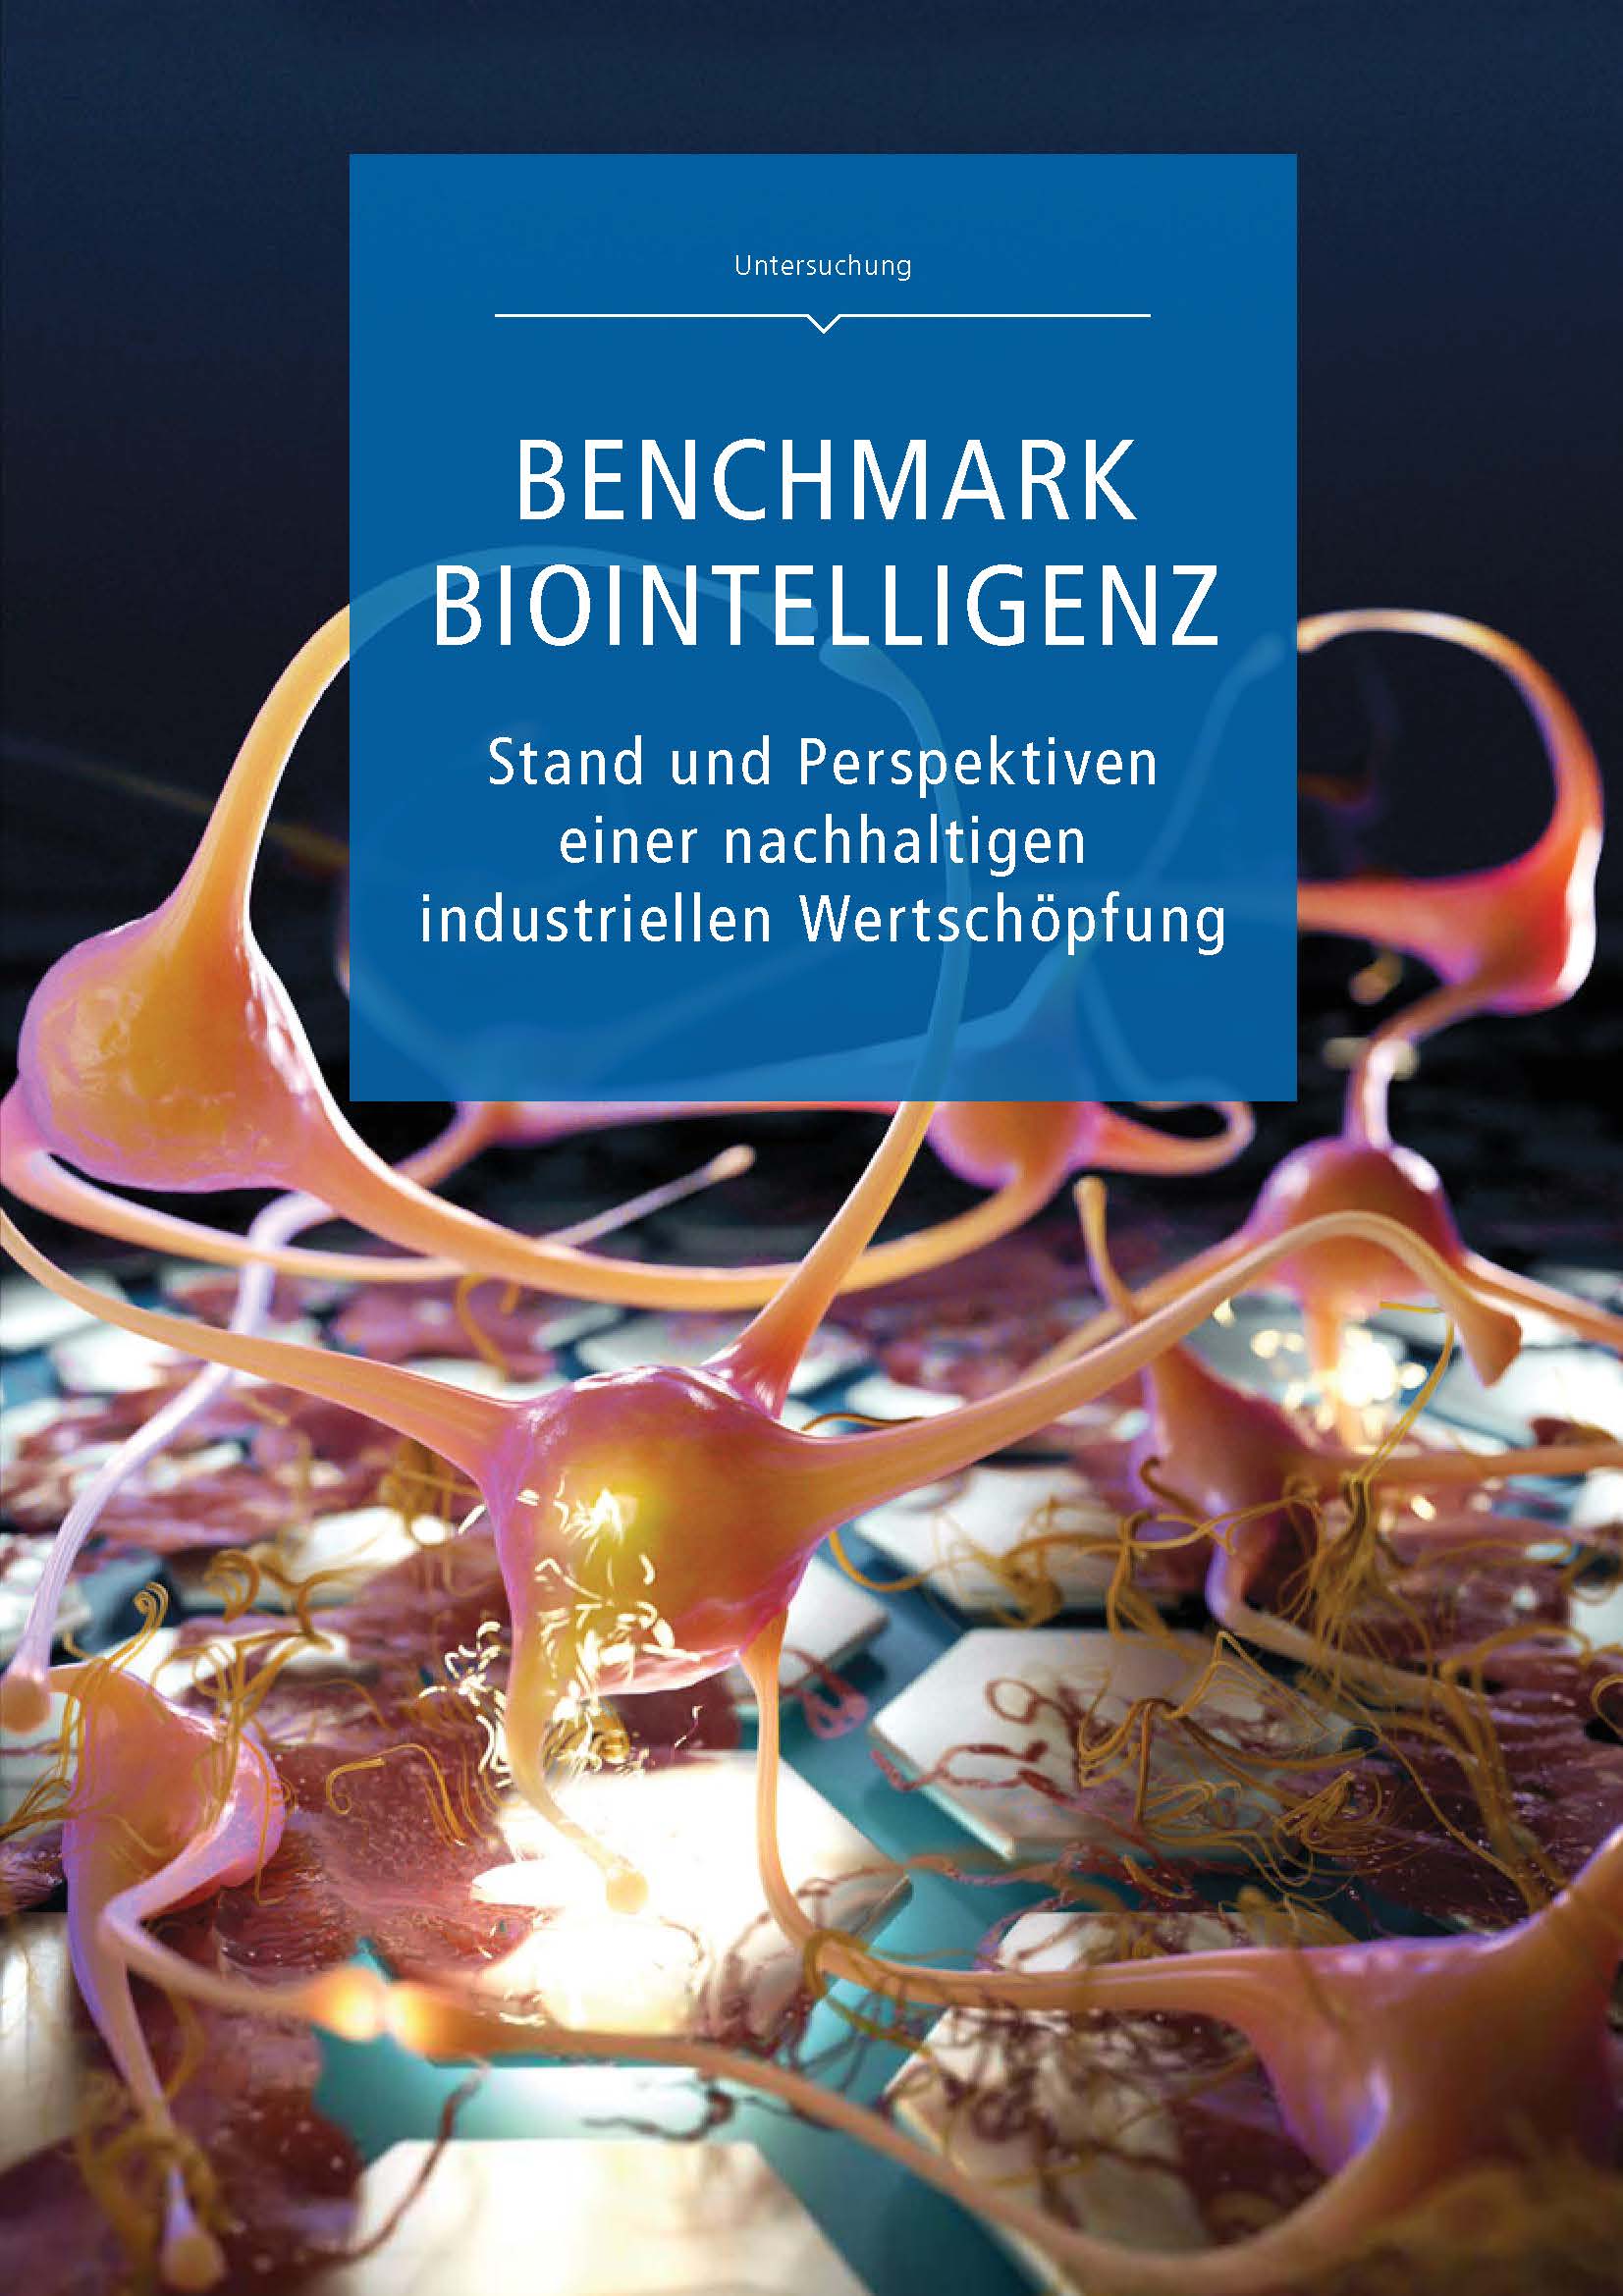 Titelseite der Internationalen Benchmarkuntersuchung Biointelligenz (InBenBio)